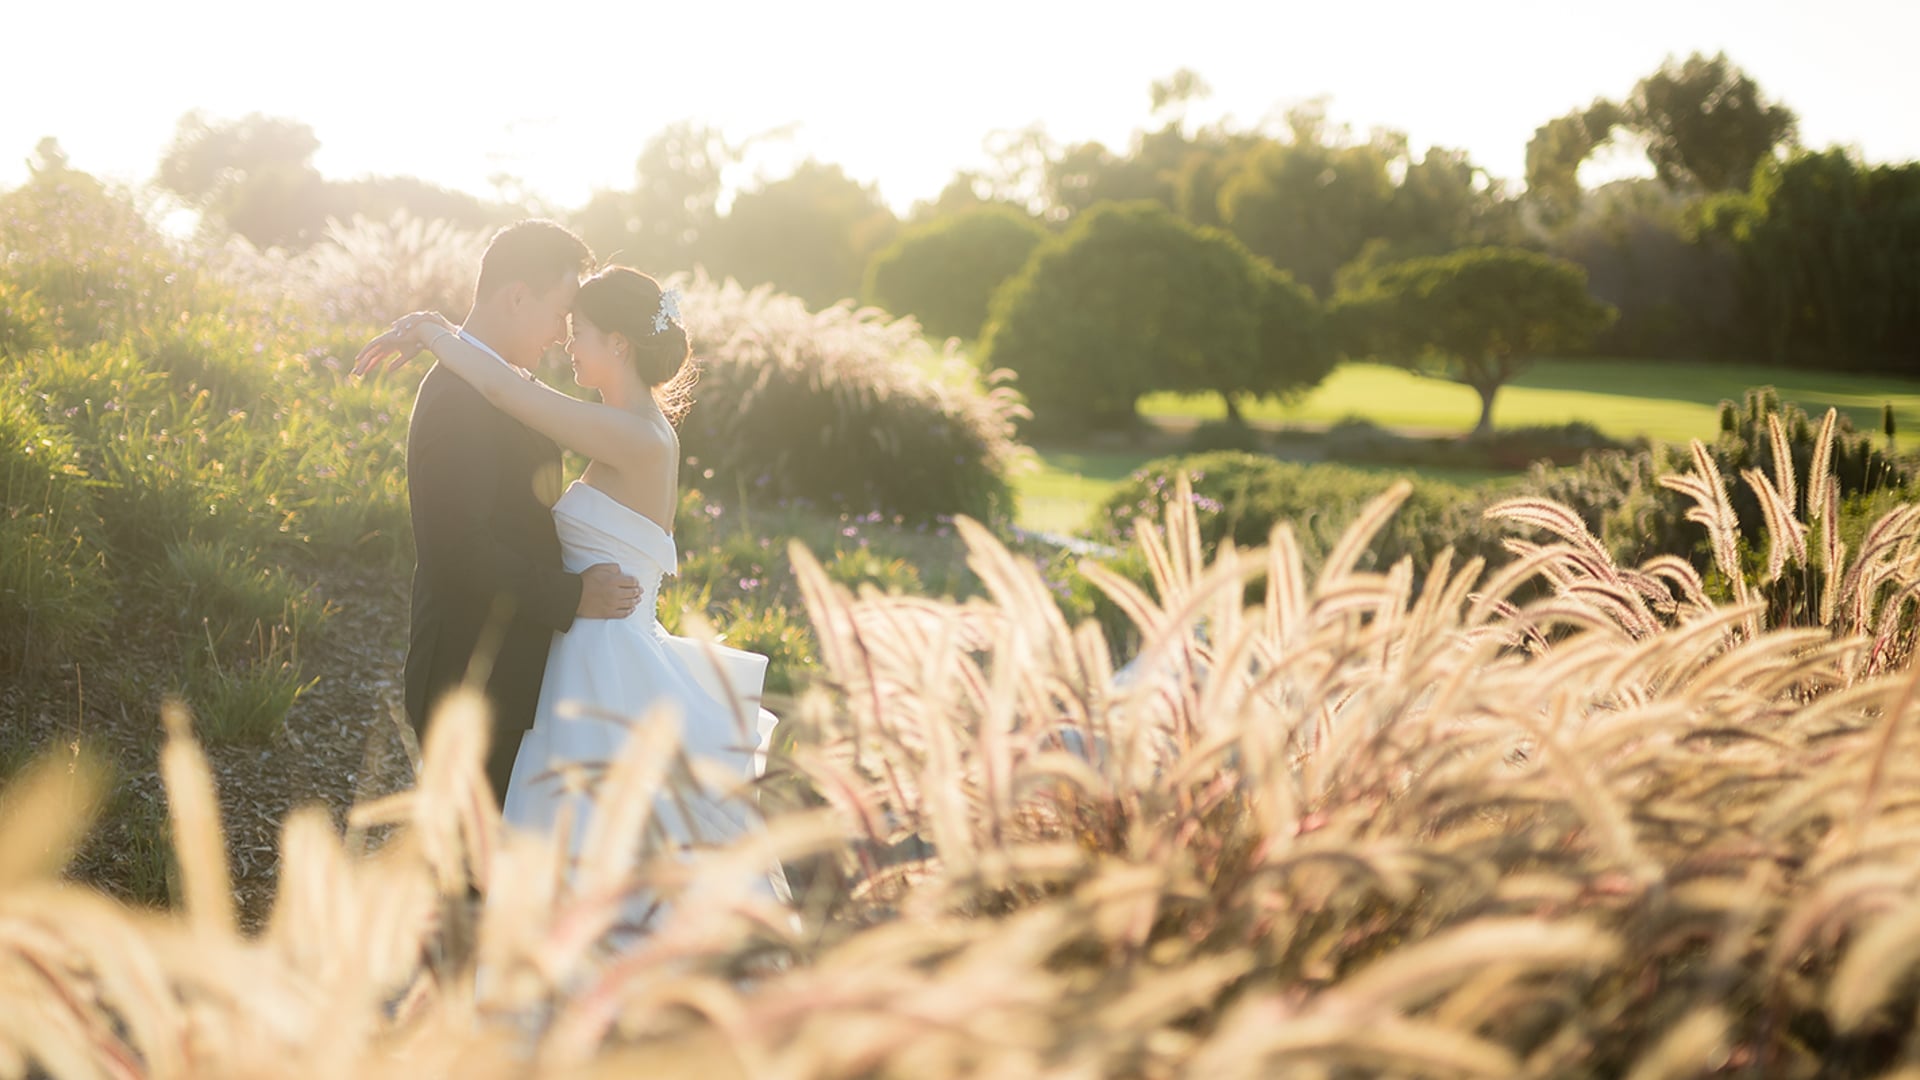 Shauna & Sean Wedding | Palos Verdes Golf Club, CA